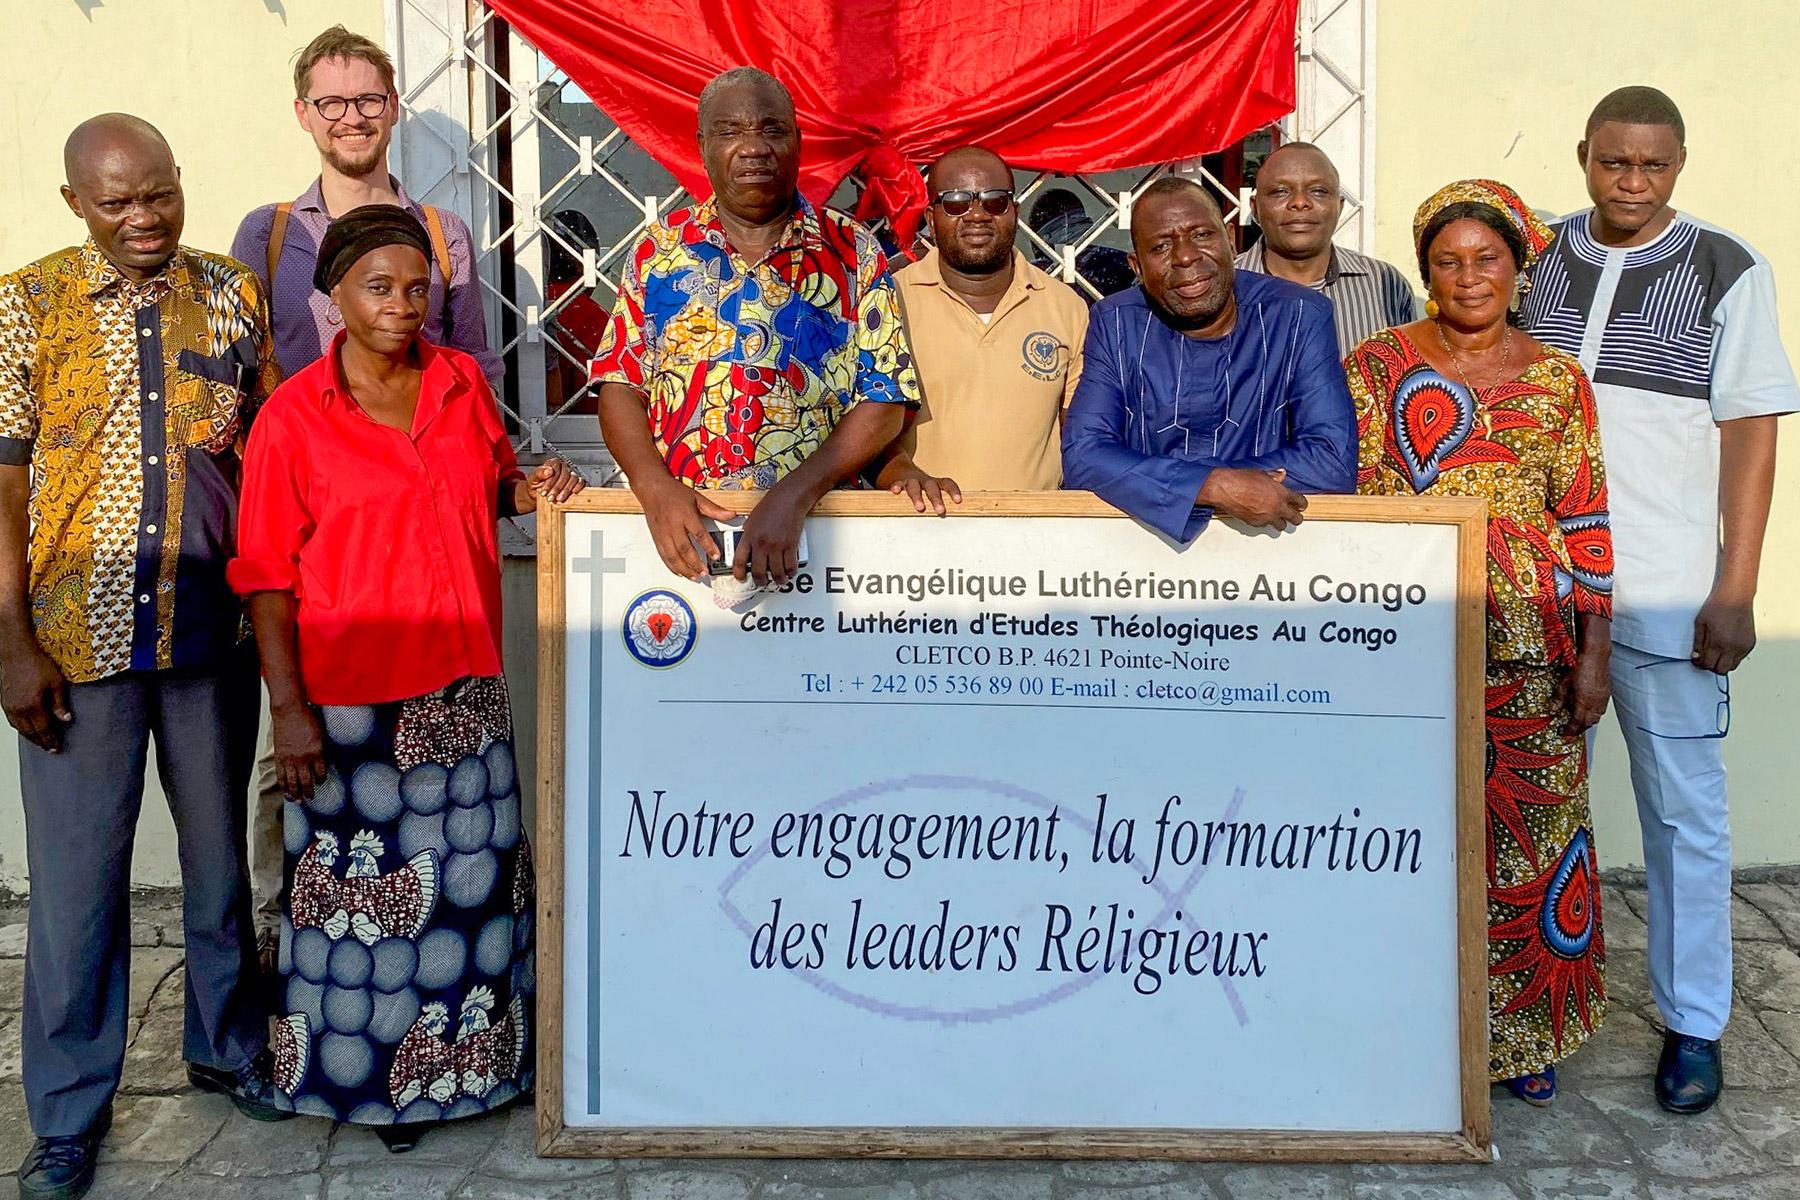 Führungspersonen der Evangelisch-Lutherischen Kirche des Kongo, darunter Kirchenpräsident Albert Kouita (4. v. r., im blauen Hemd), und Mitarbeitende des LWB vor dem Lutherischen Zentrum für Theologische Studien in Brazzaville, wo im Februar der Workshop für Kapazitätsaufbau stattfand